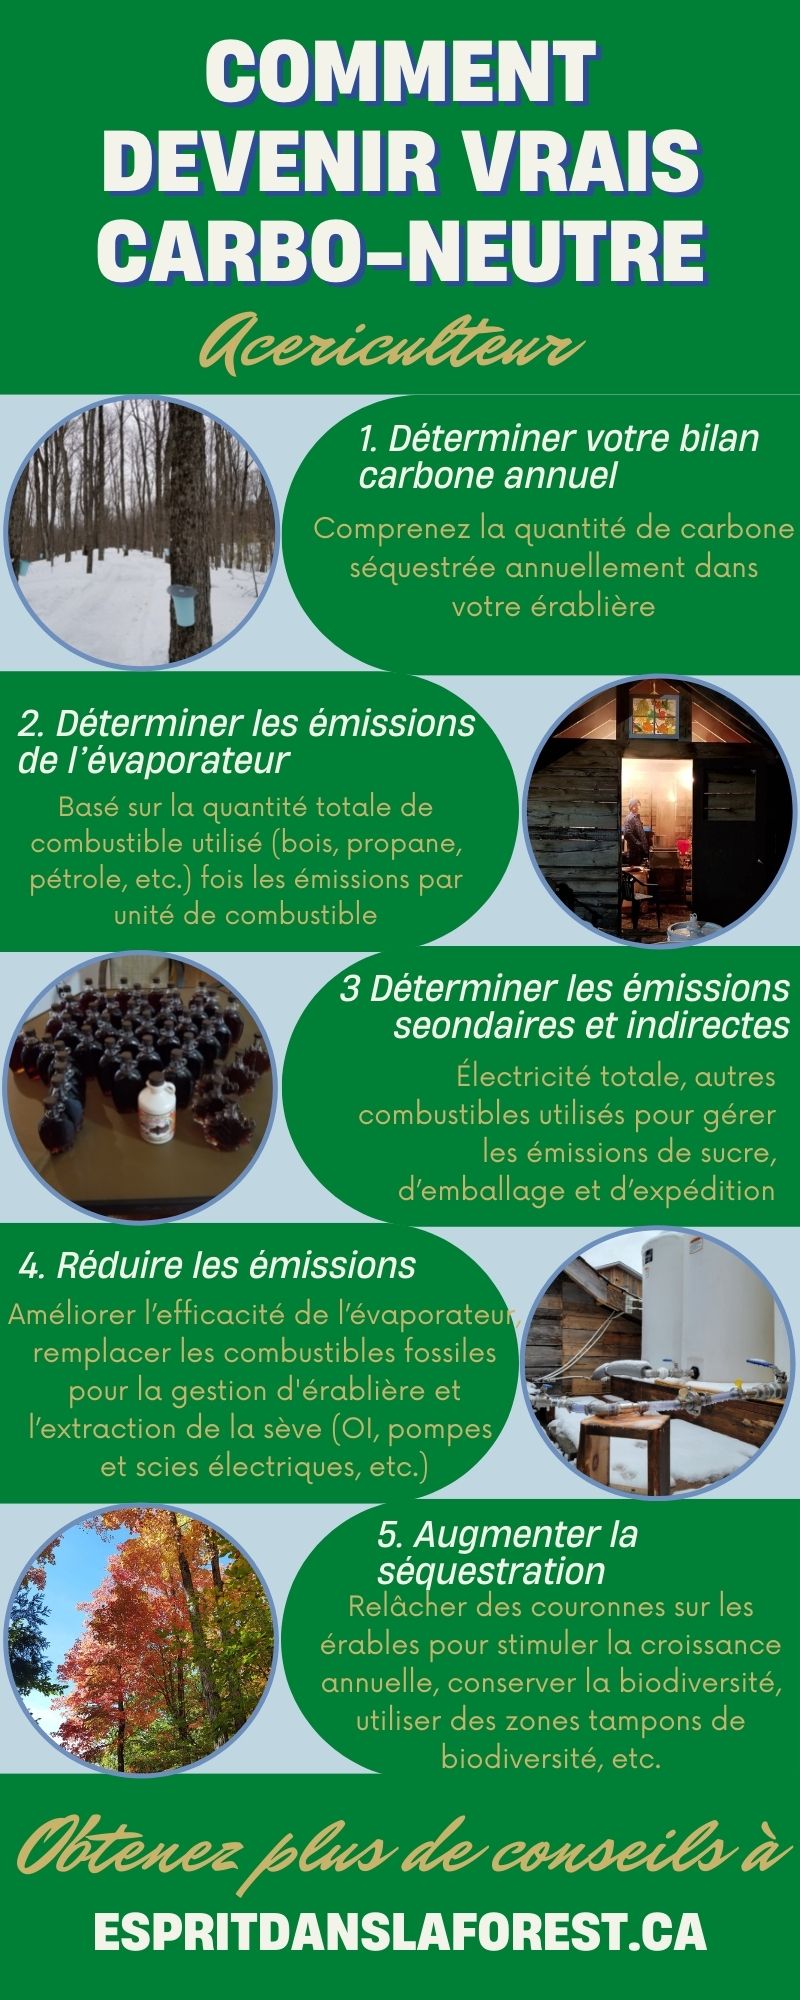 Infographic sur Carbo-Neutre Commen10